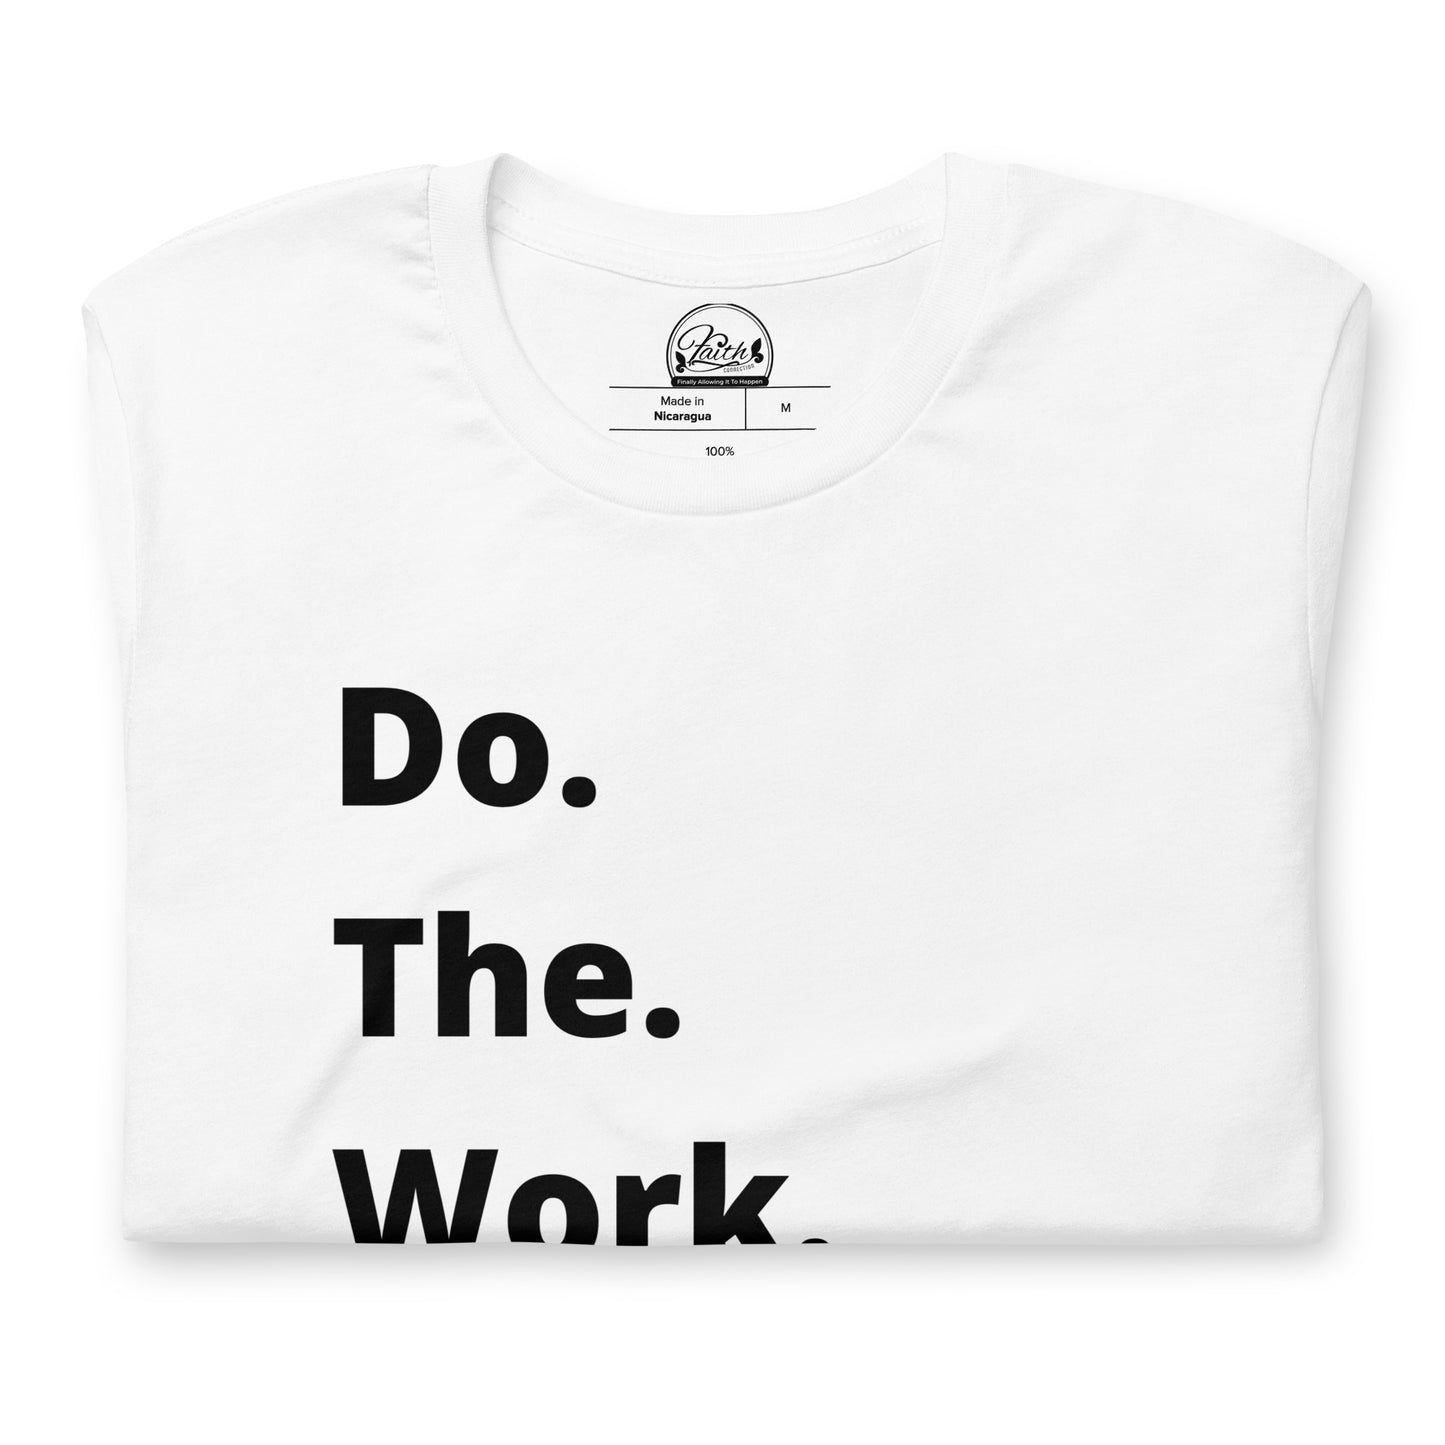 Do. The. Work. Short-Sleeve Unisex T-Shirt - White